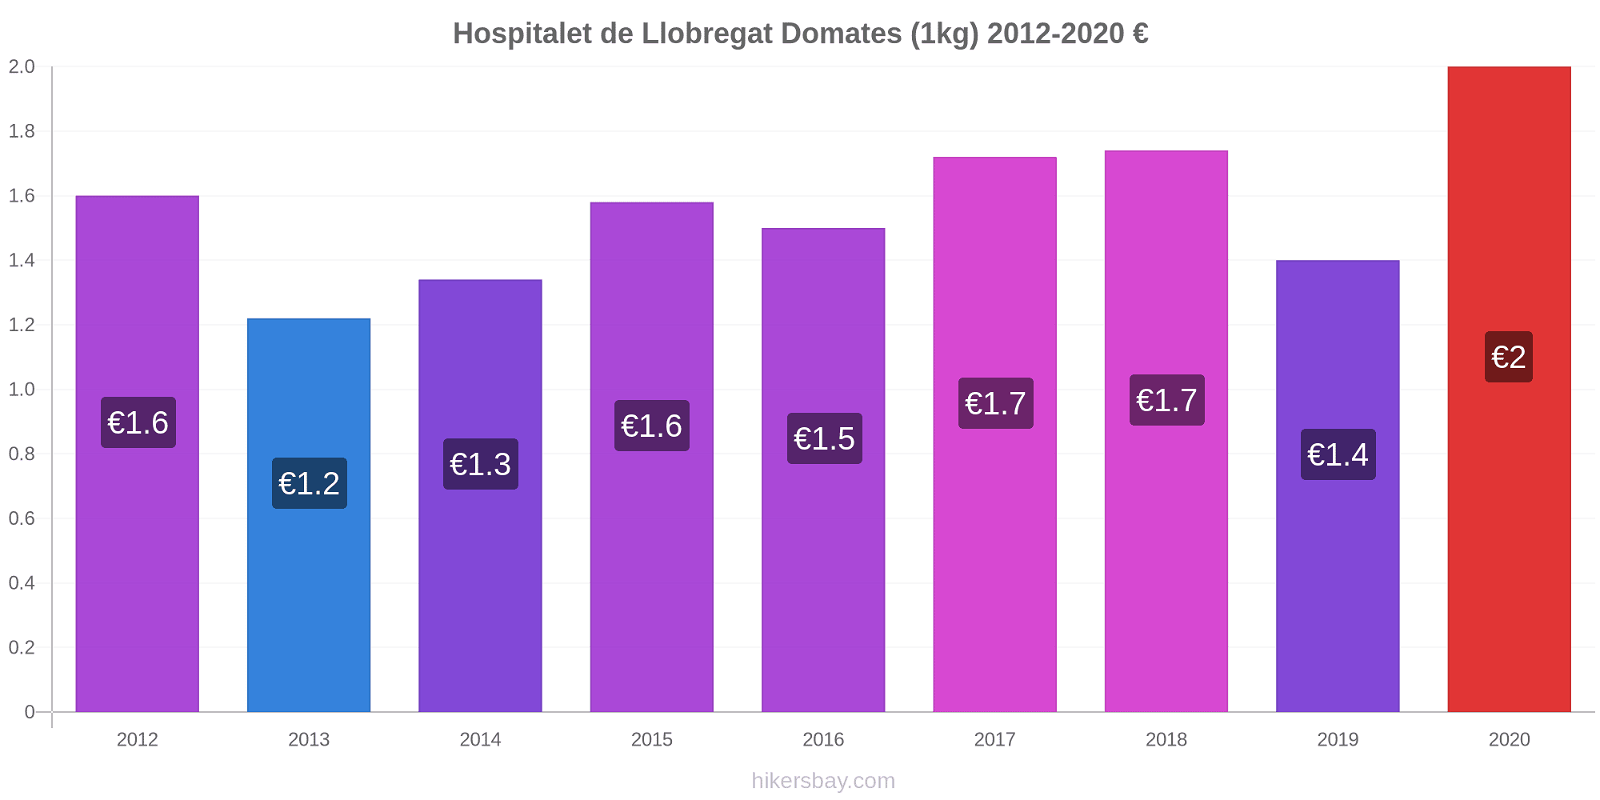 Hospitalet de Llobregat fiyat değişiklikleri Domates (1kg) hikersbay.com